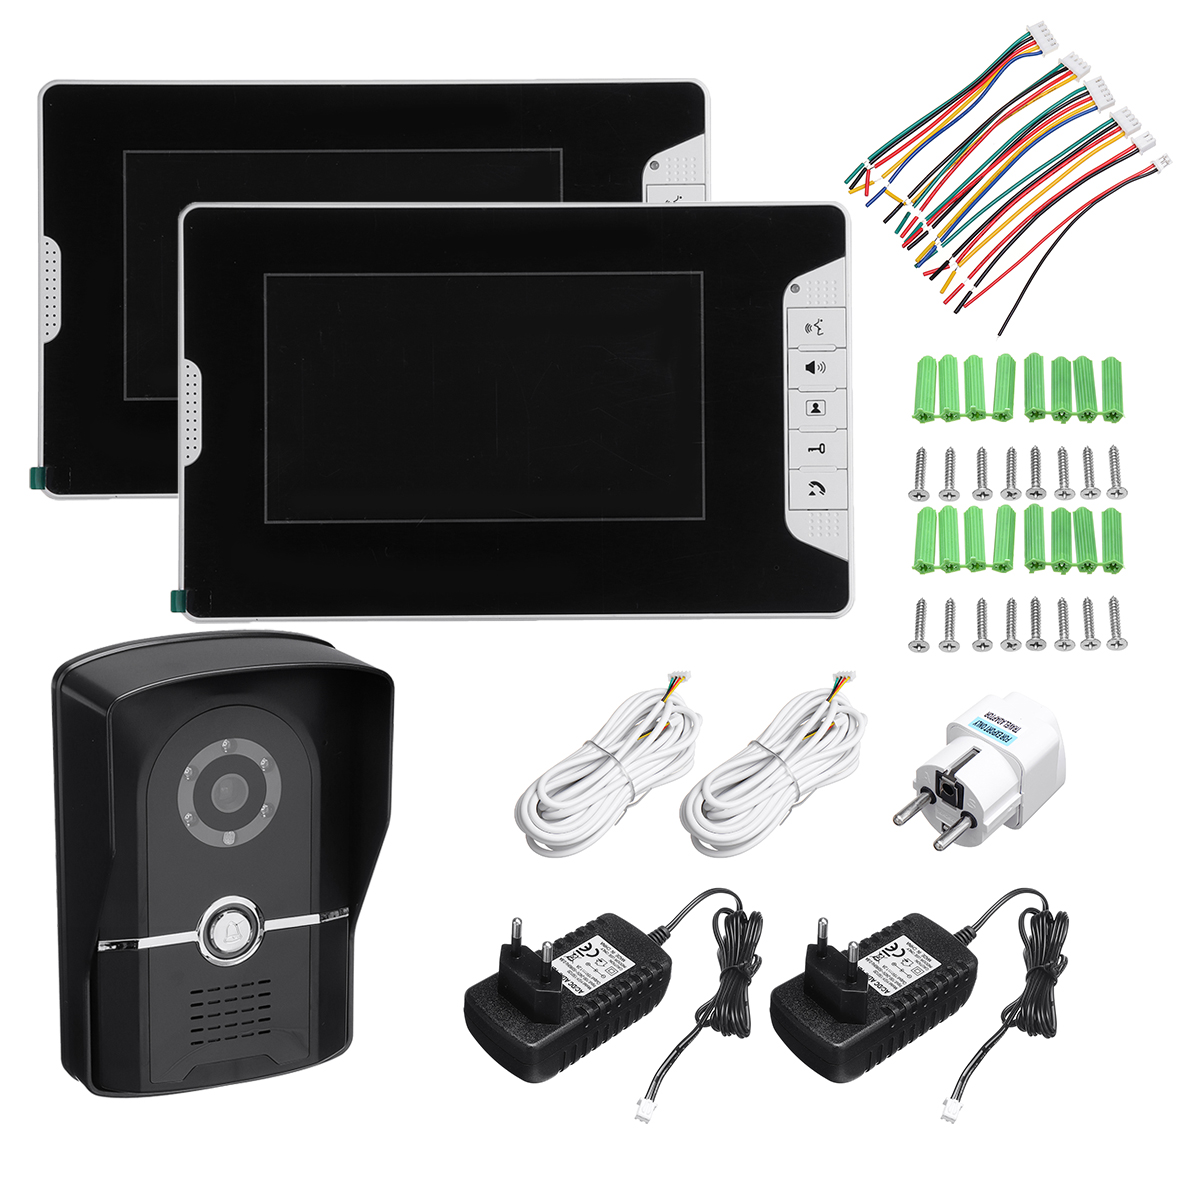 SY813MK12 Video Doorbell Intercom package